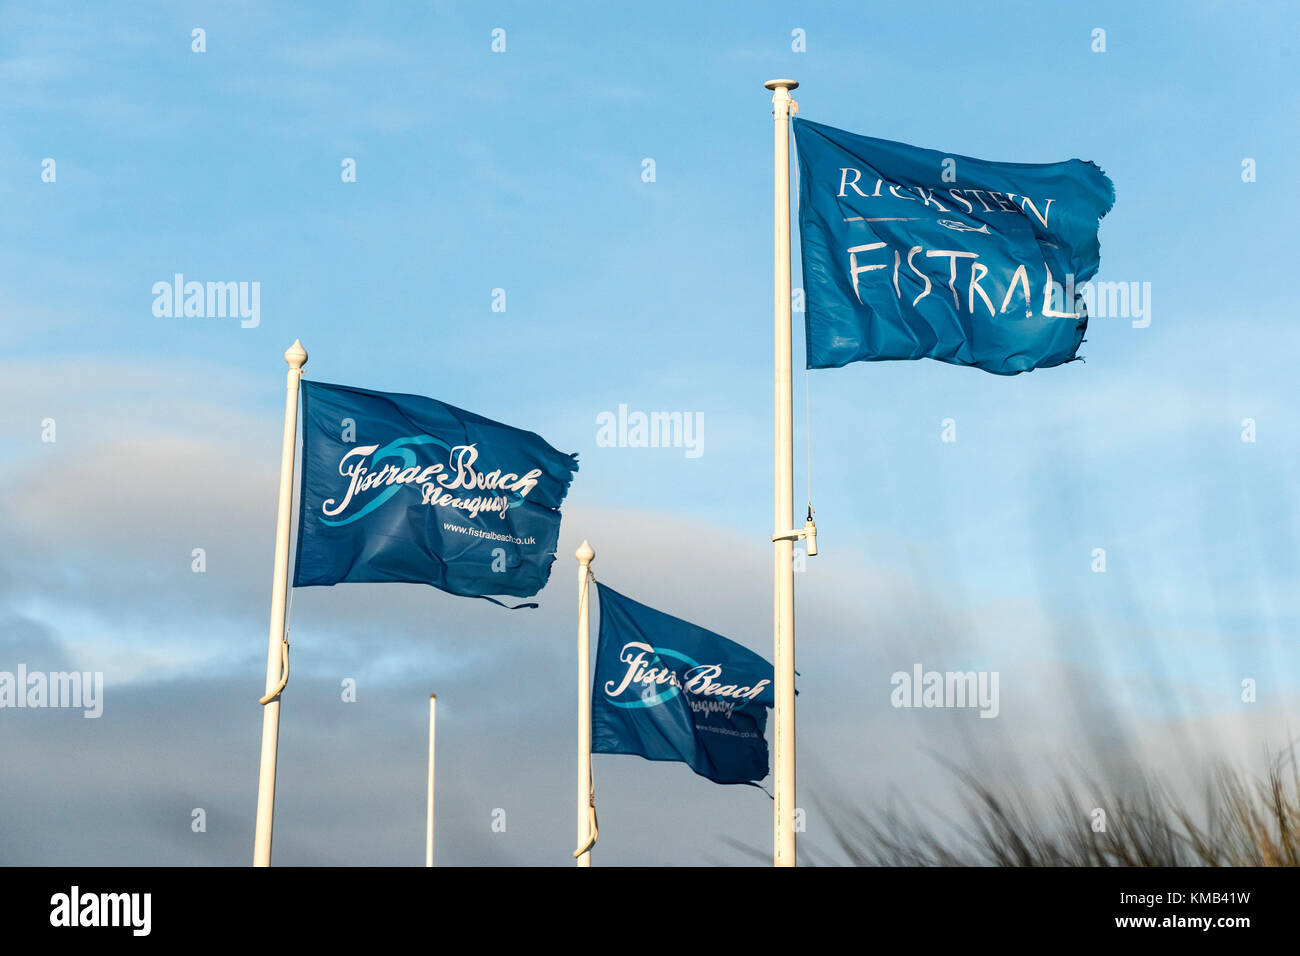 Flaggen für Rick Stein und Fistral Beach in Newquay Cornwall UK. Stockfoto